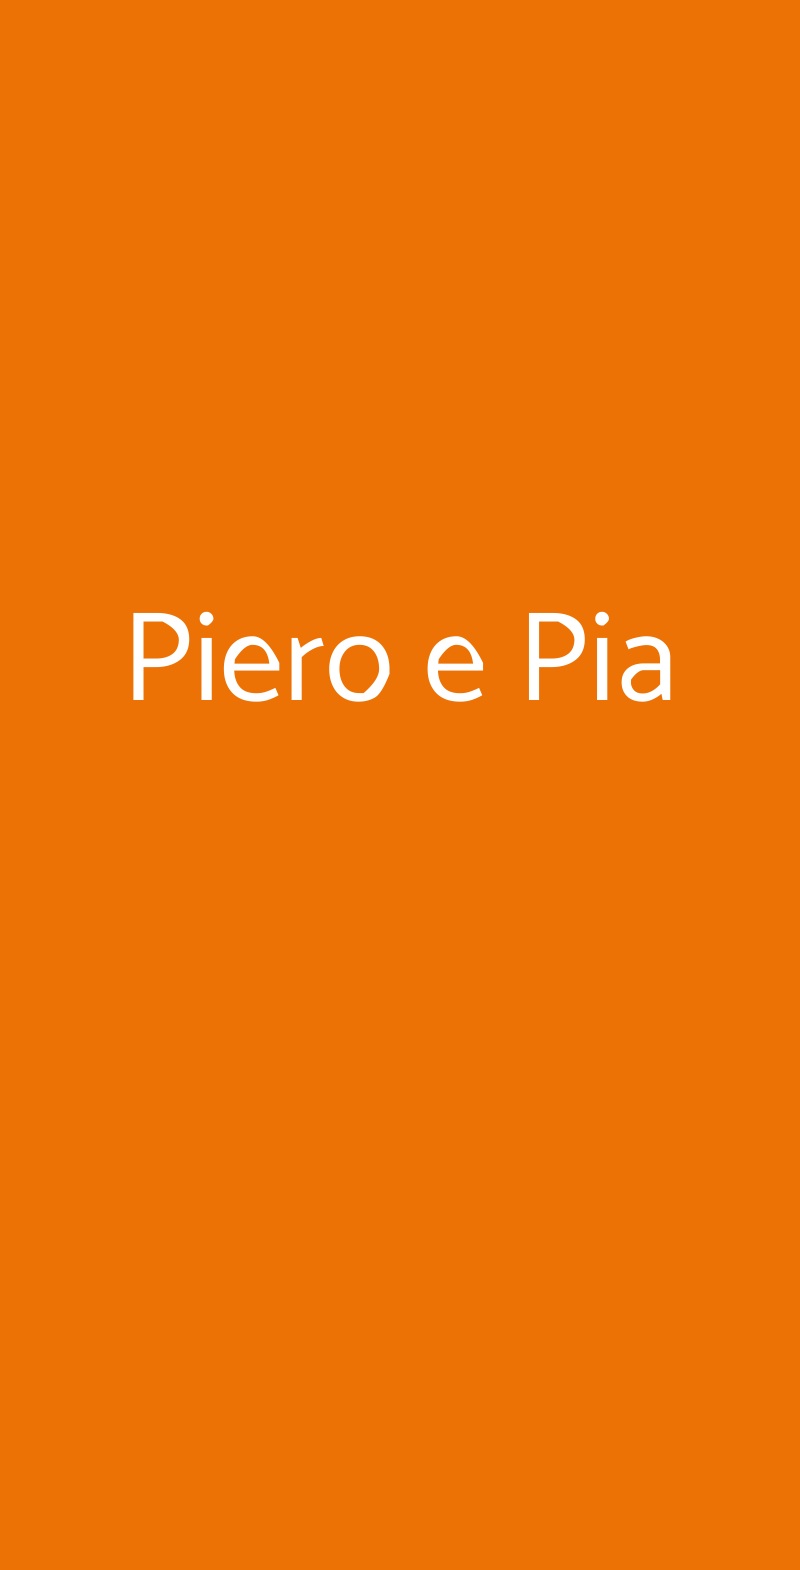 Piero e Pia Milano menù 1 pagina